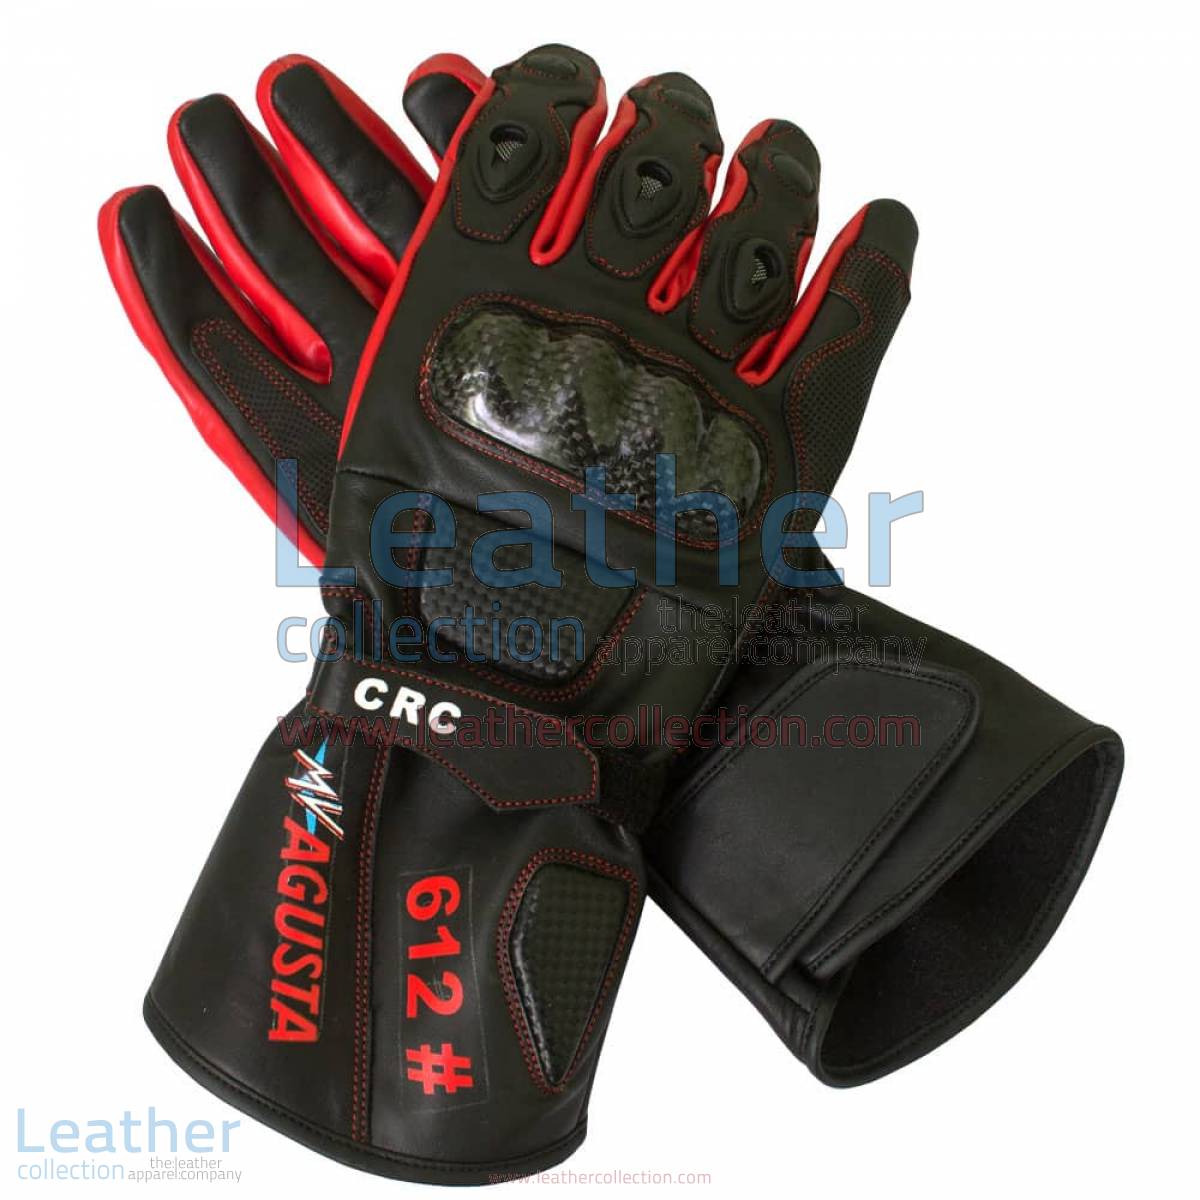 MV Agusta Race Leather Gloves